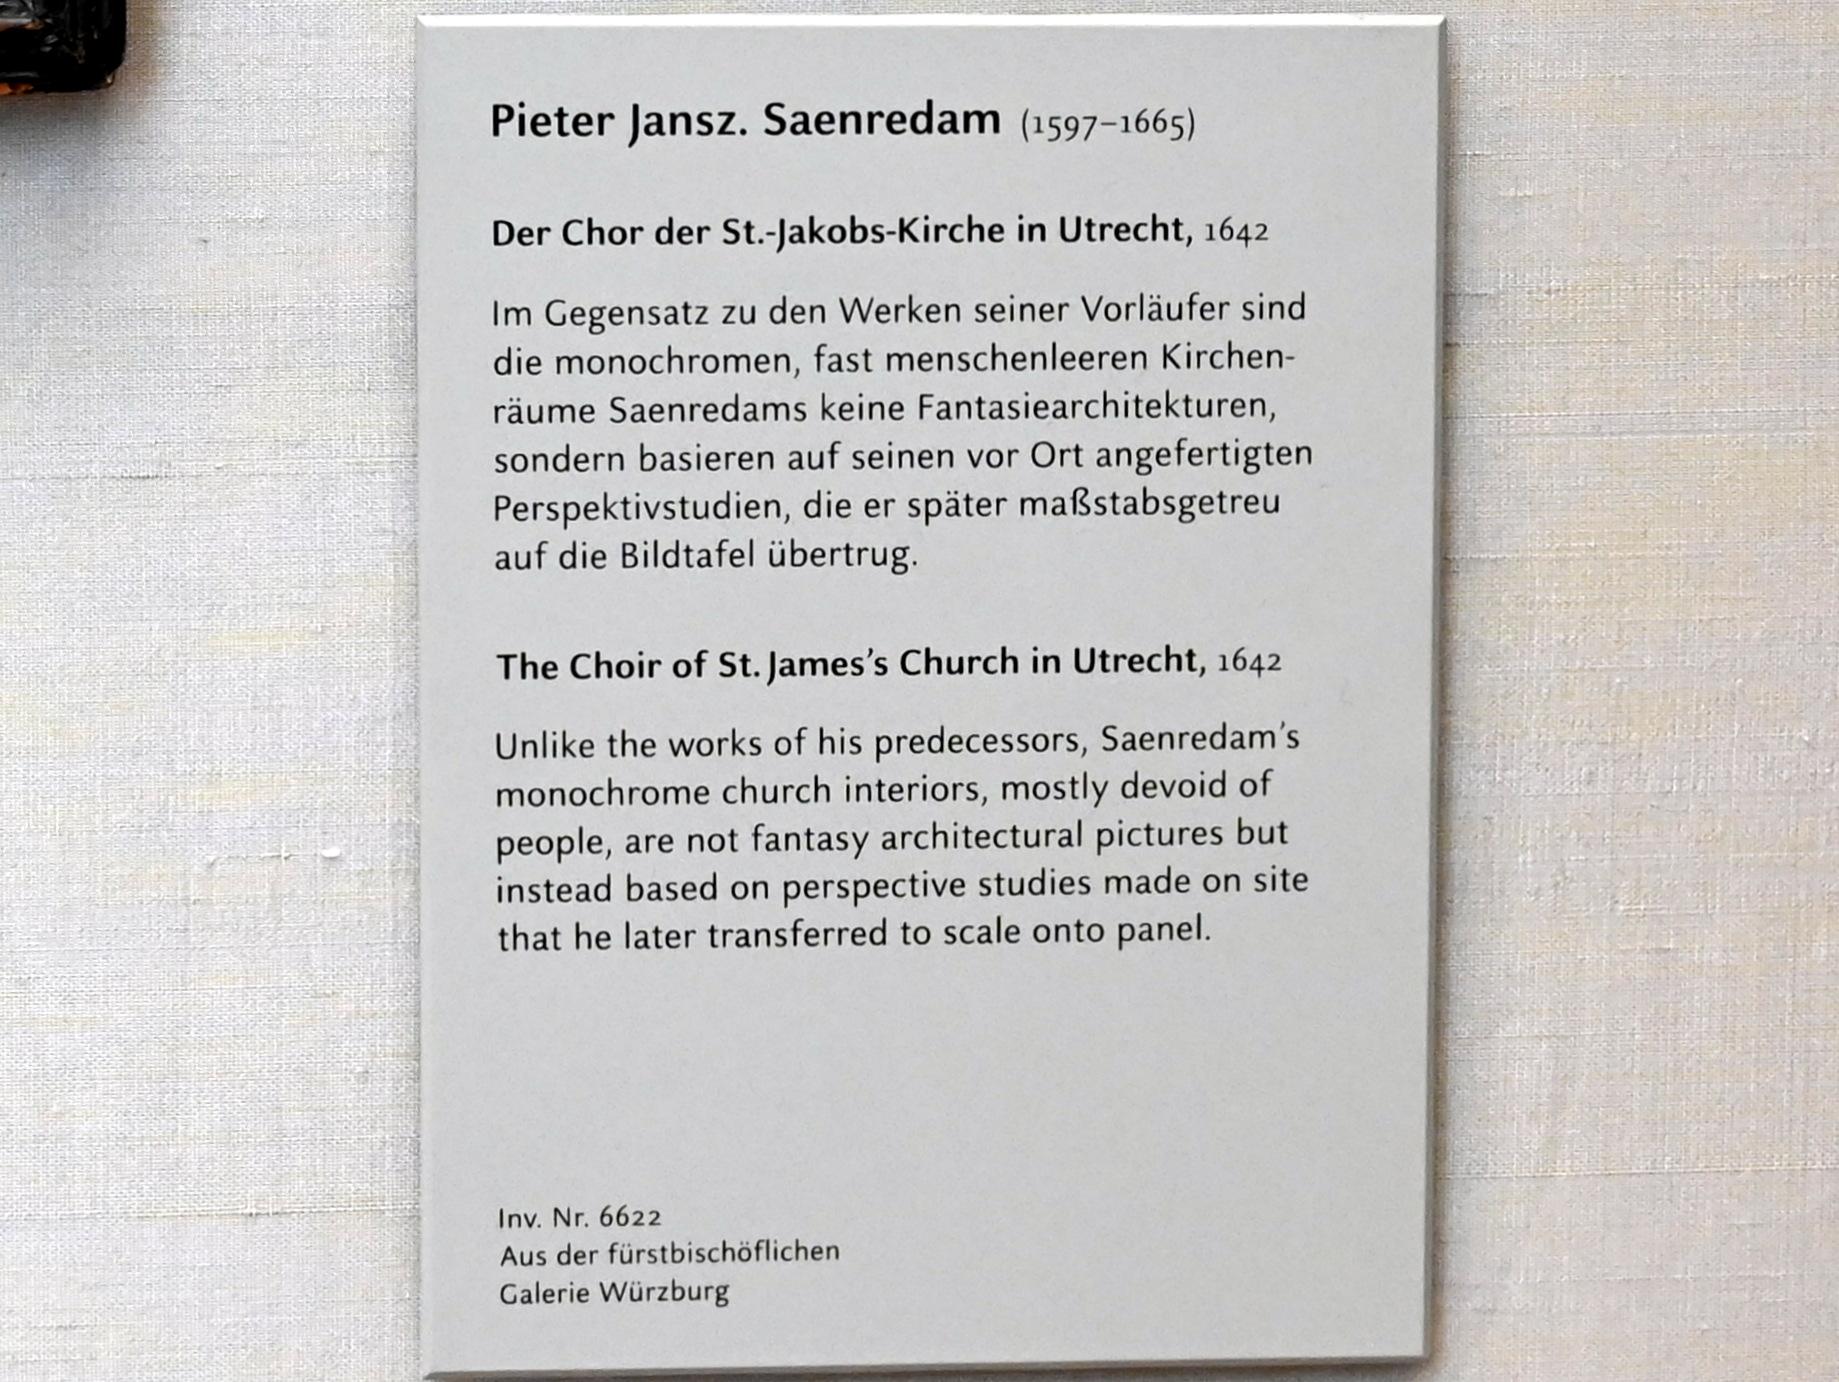 Pieter Jansz. Saenredam (1630–1668), Das Innere der St. Jakobs-Kirche in Utrecht, München, Alte Pinakothek, Obergeschoss Kabinett 19, 1642, Bild 2/2